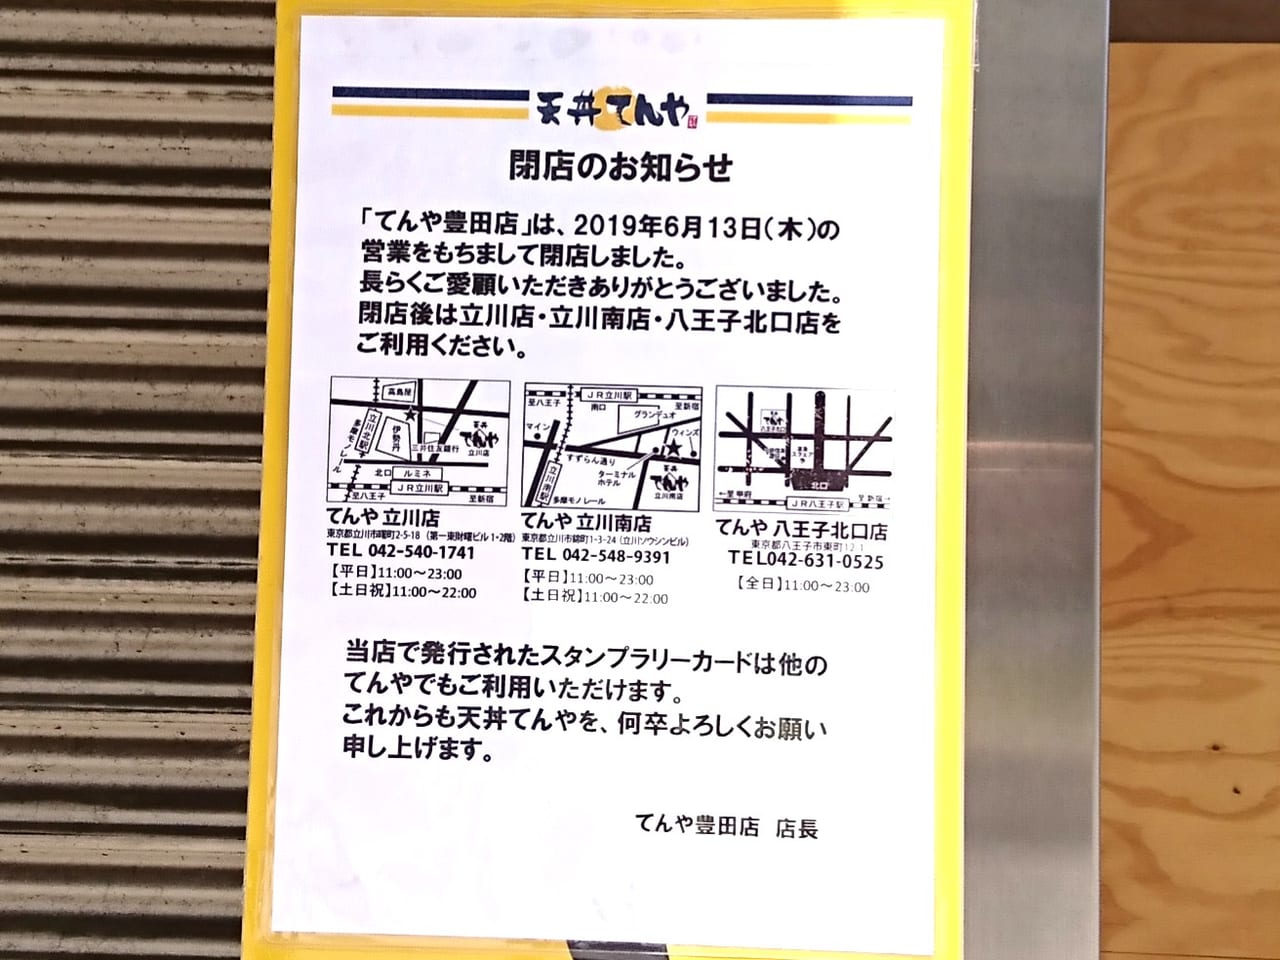 てんや豊田店が2019年6月13日に閉店のお知らせ